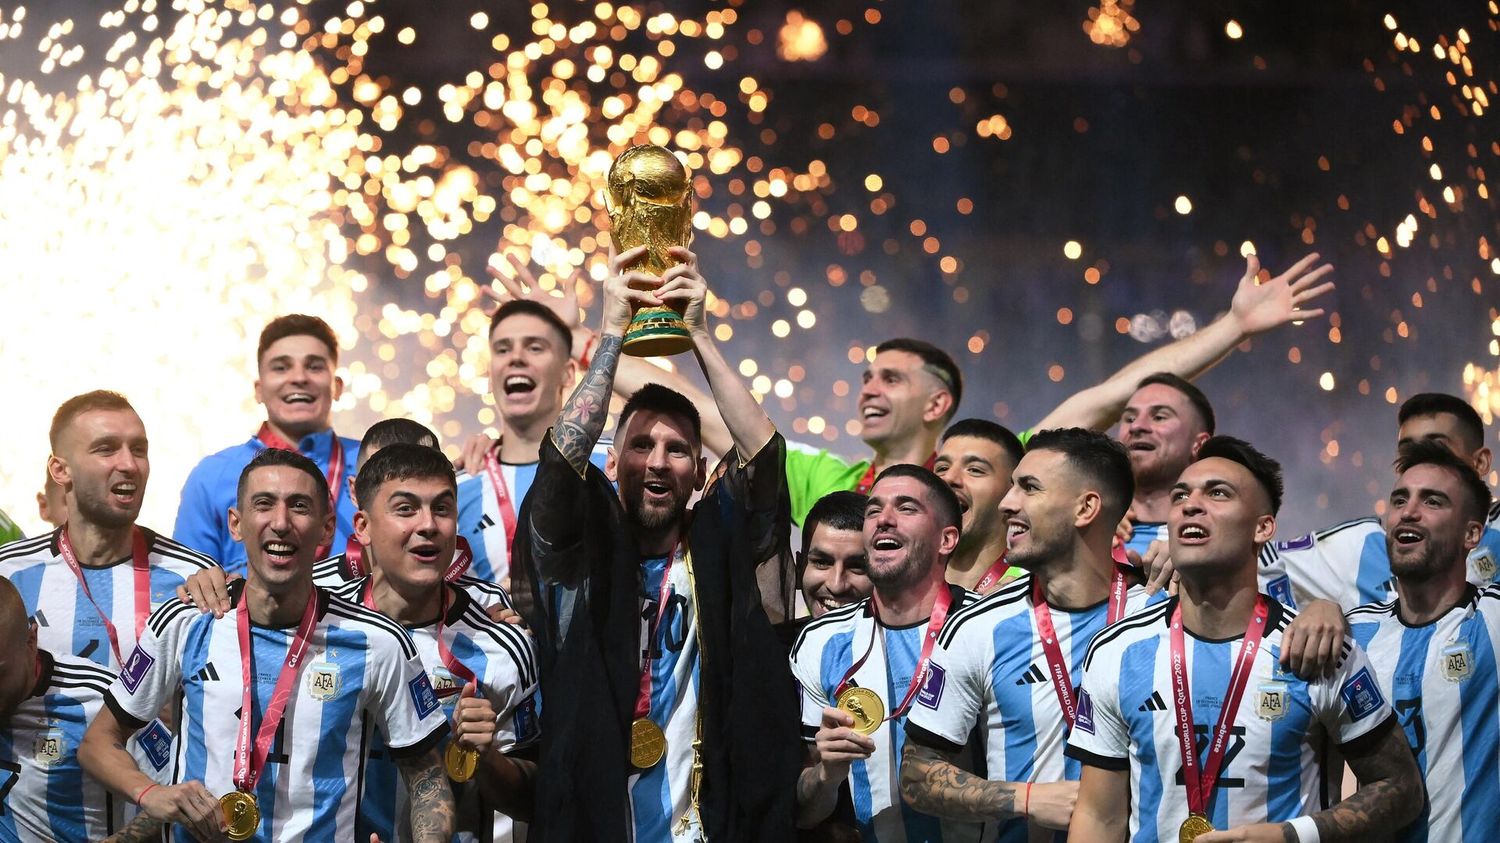 Sean eternos los laureles: ¡¡¡Argentina campeón del Mundo!!!